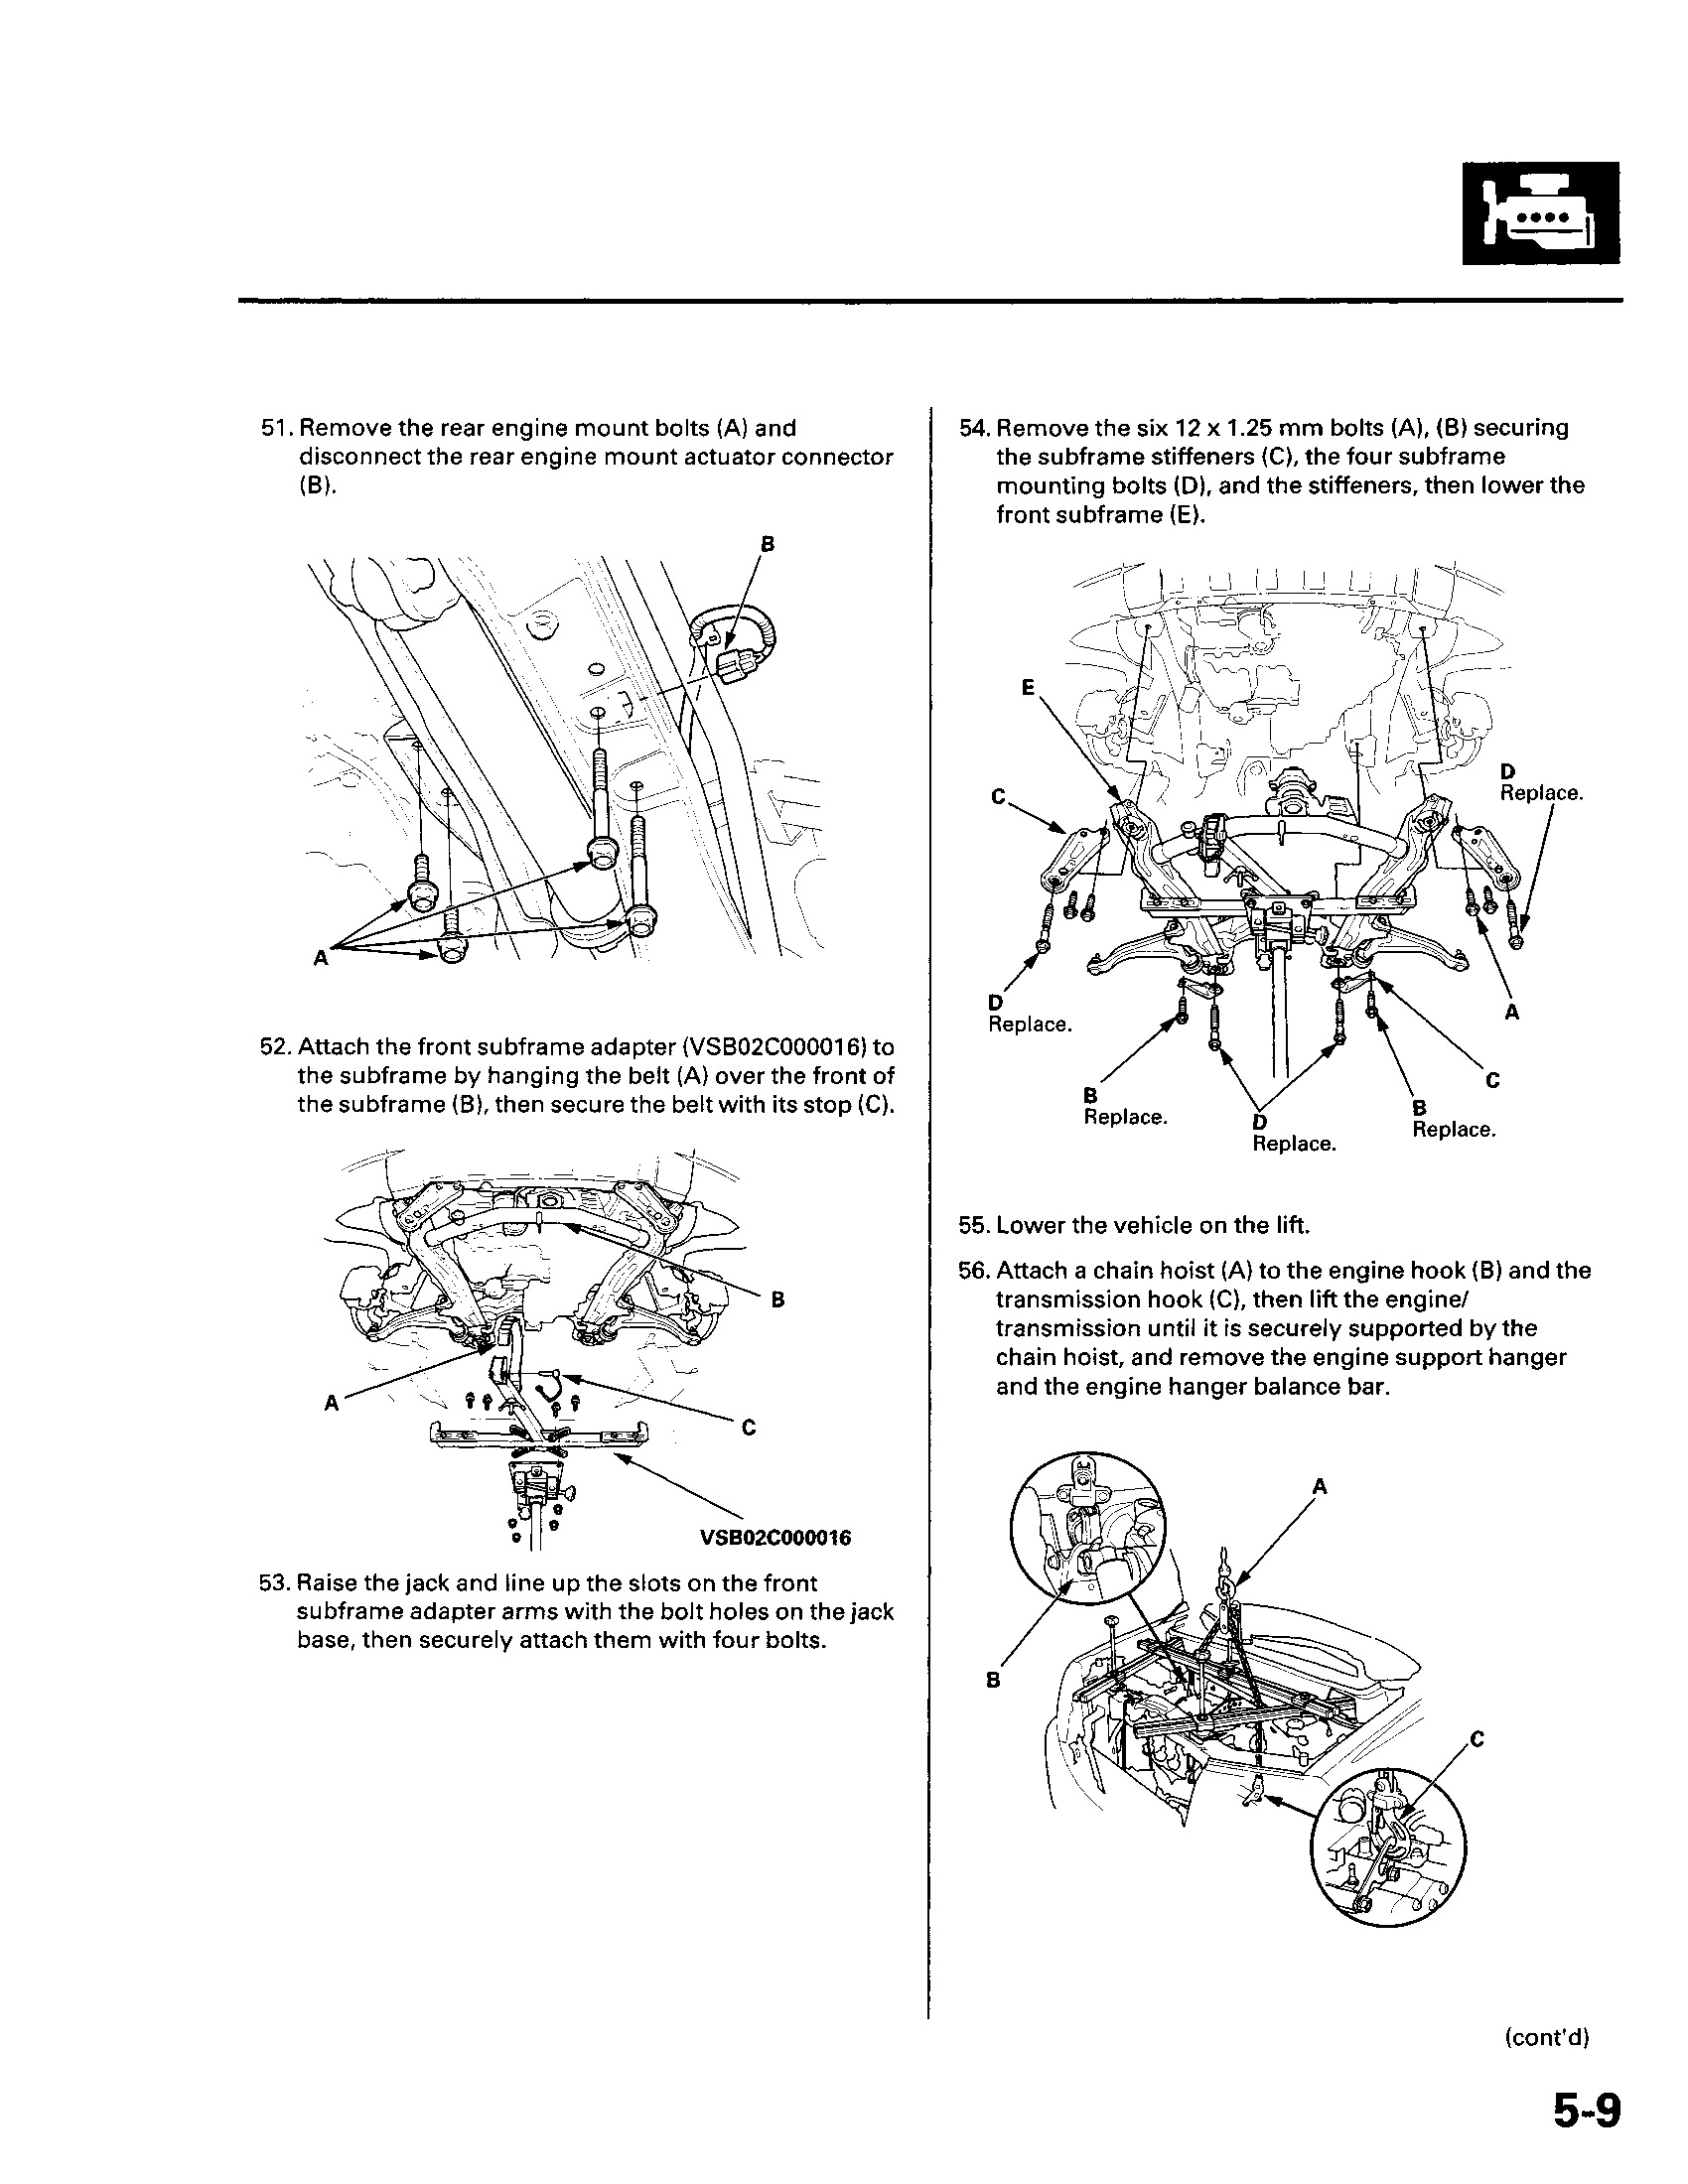 2009-2010 Honda Pilot repair manual dardoor.com